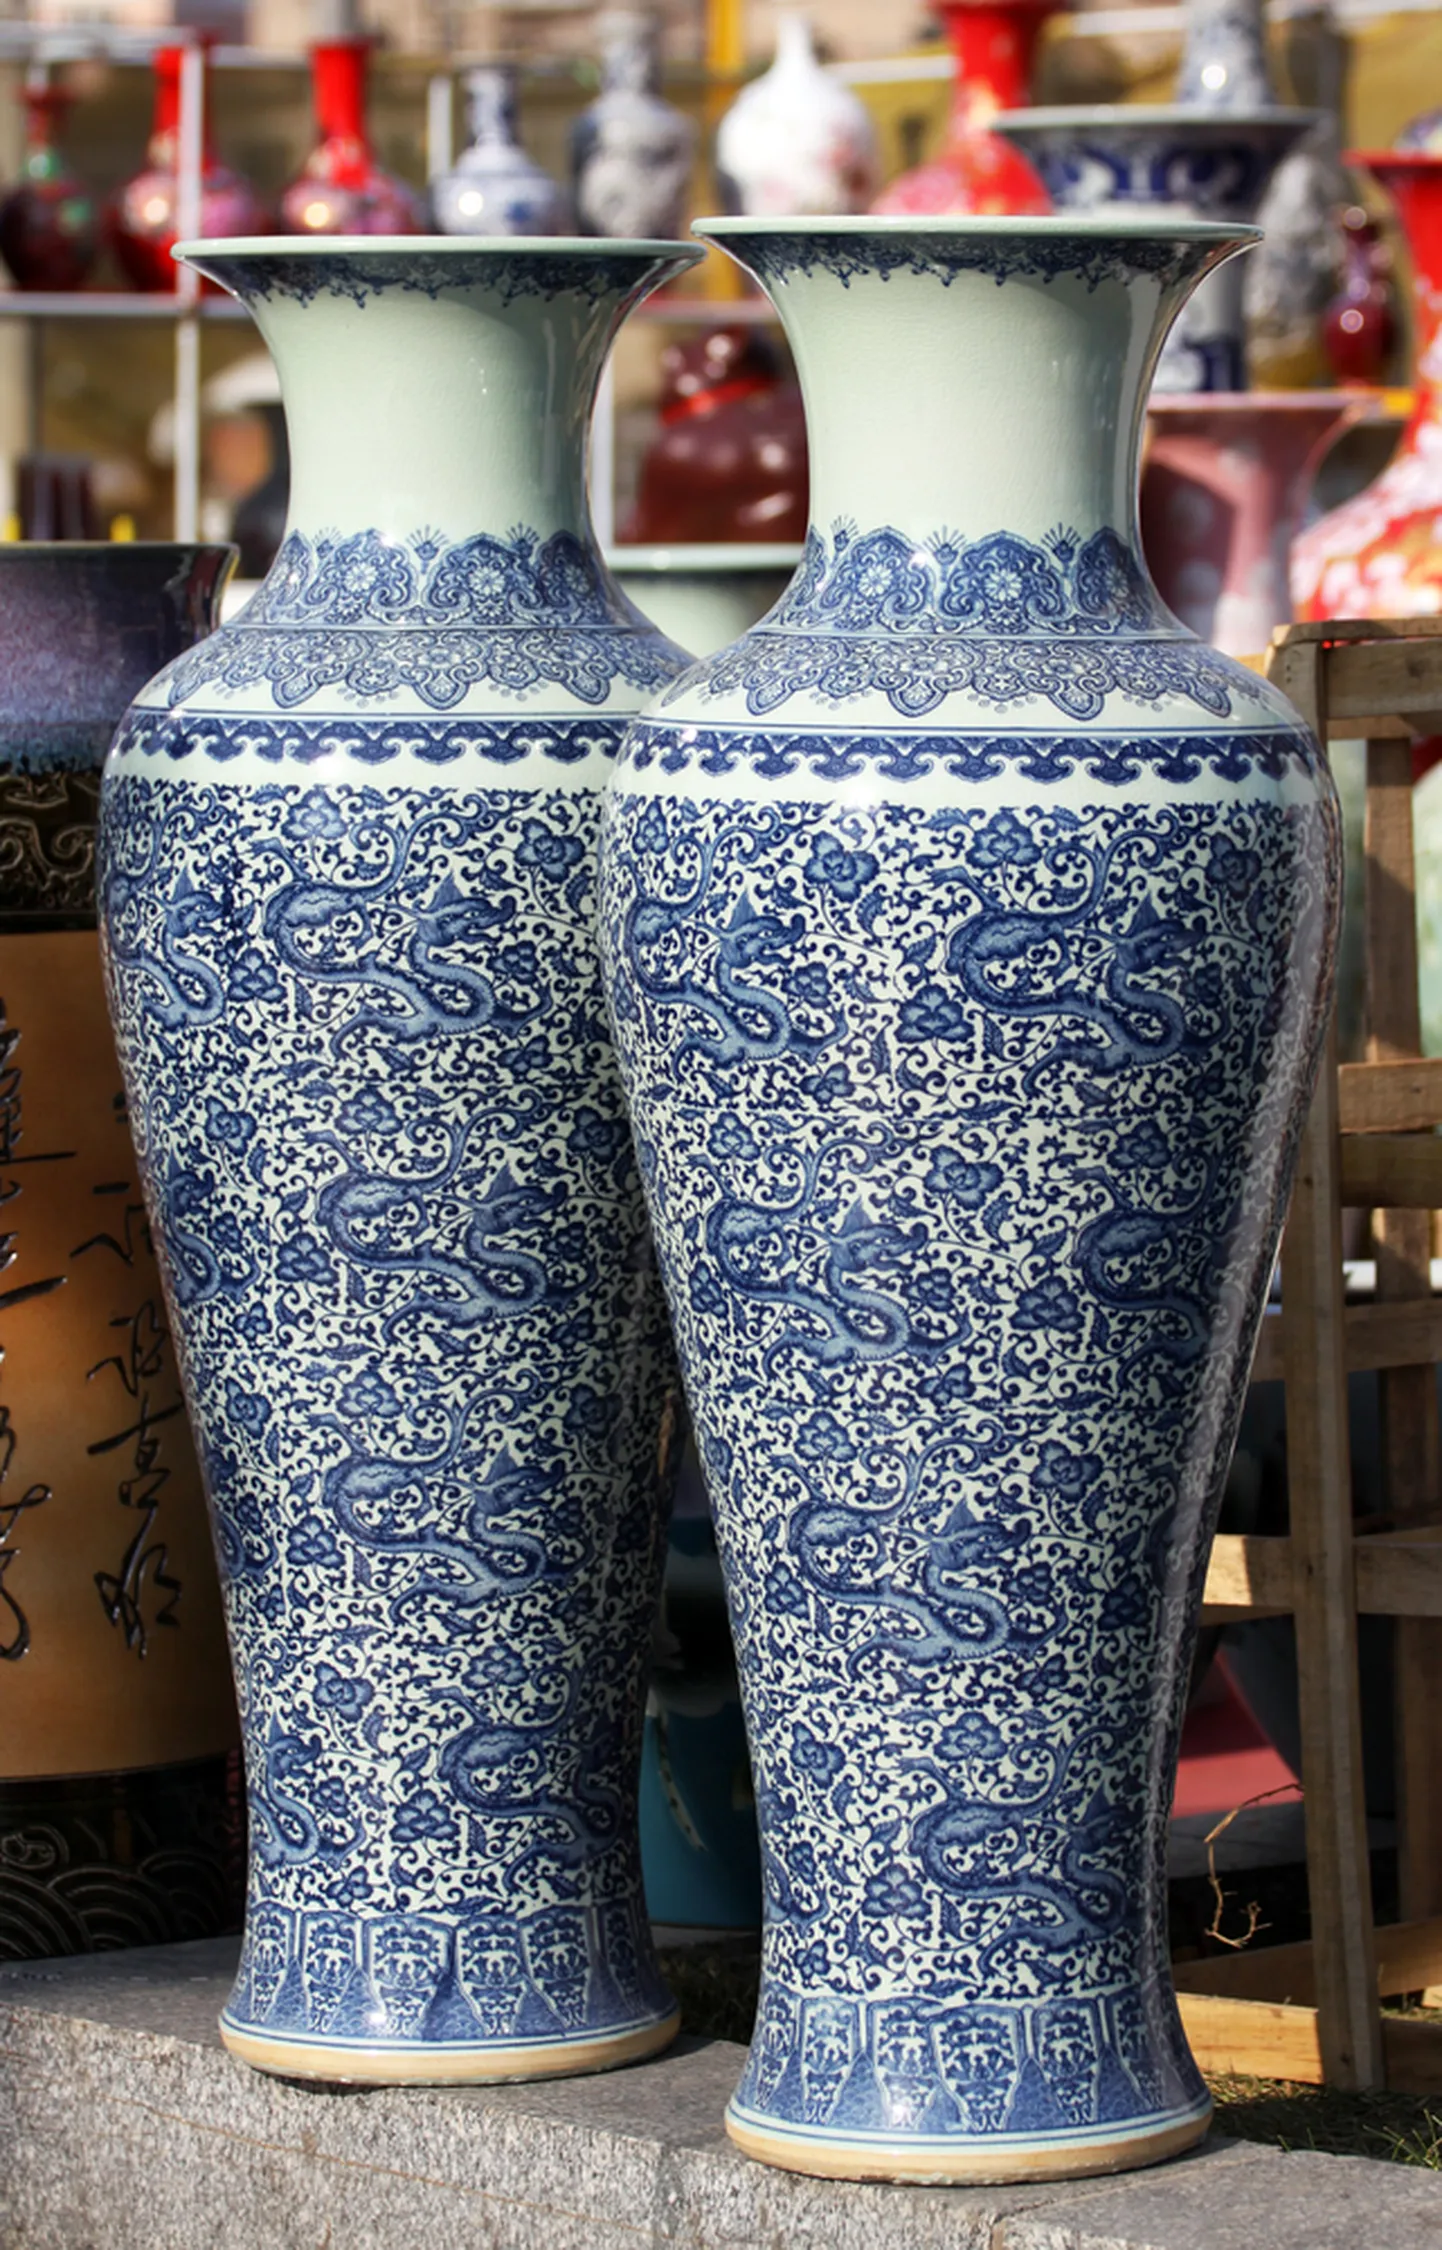 Китайские фарфоровые вазы (иллюстративное фото).